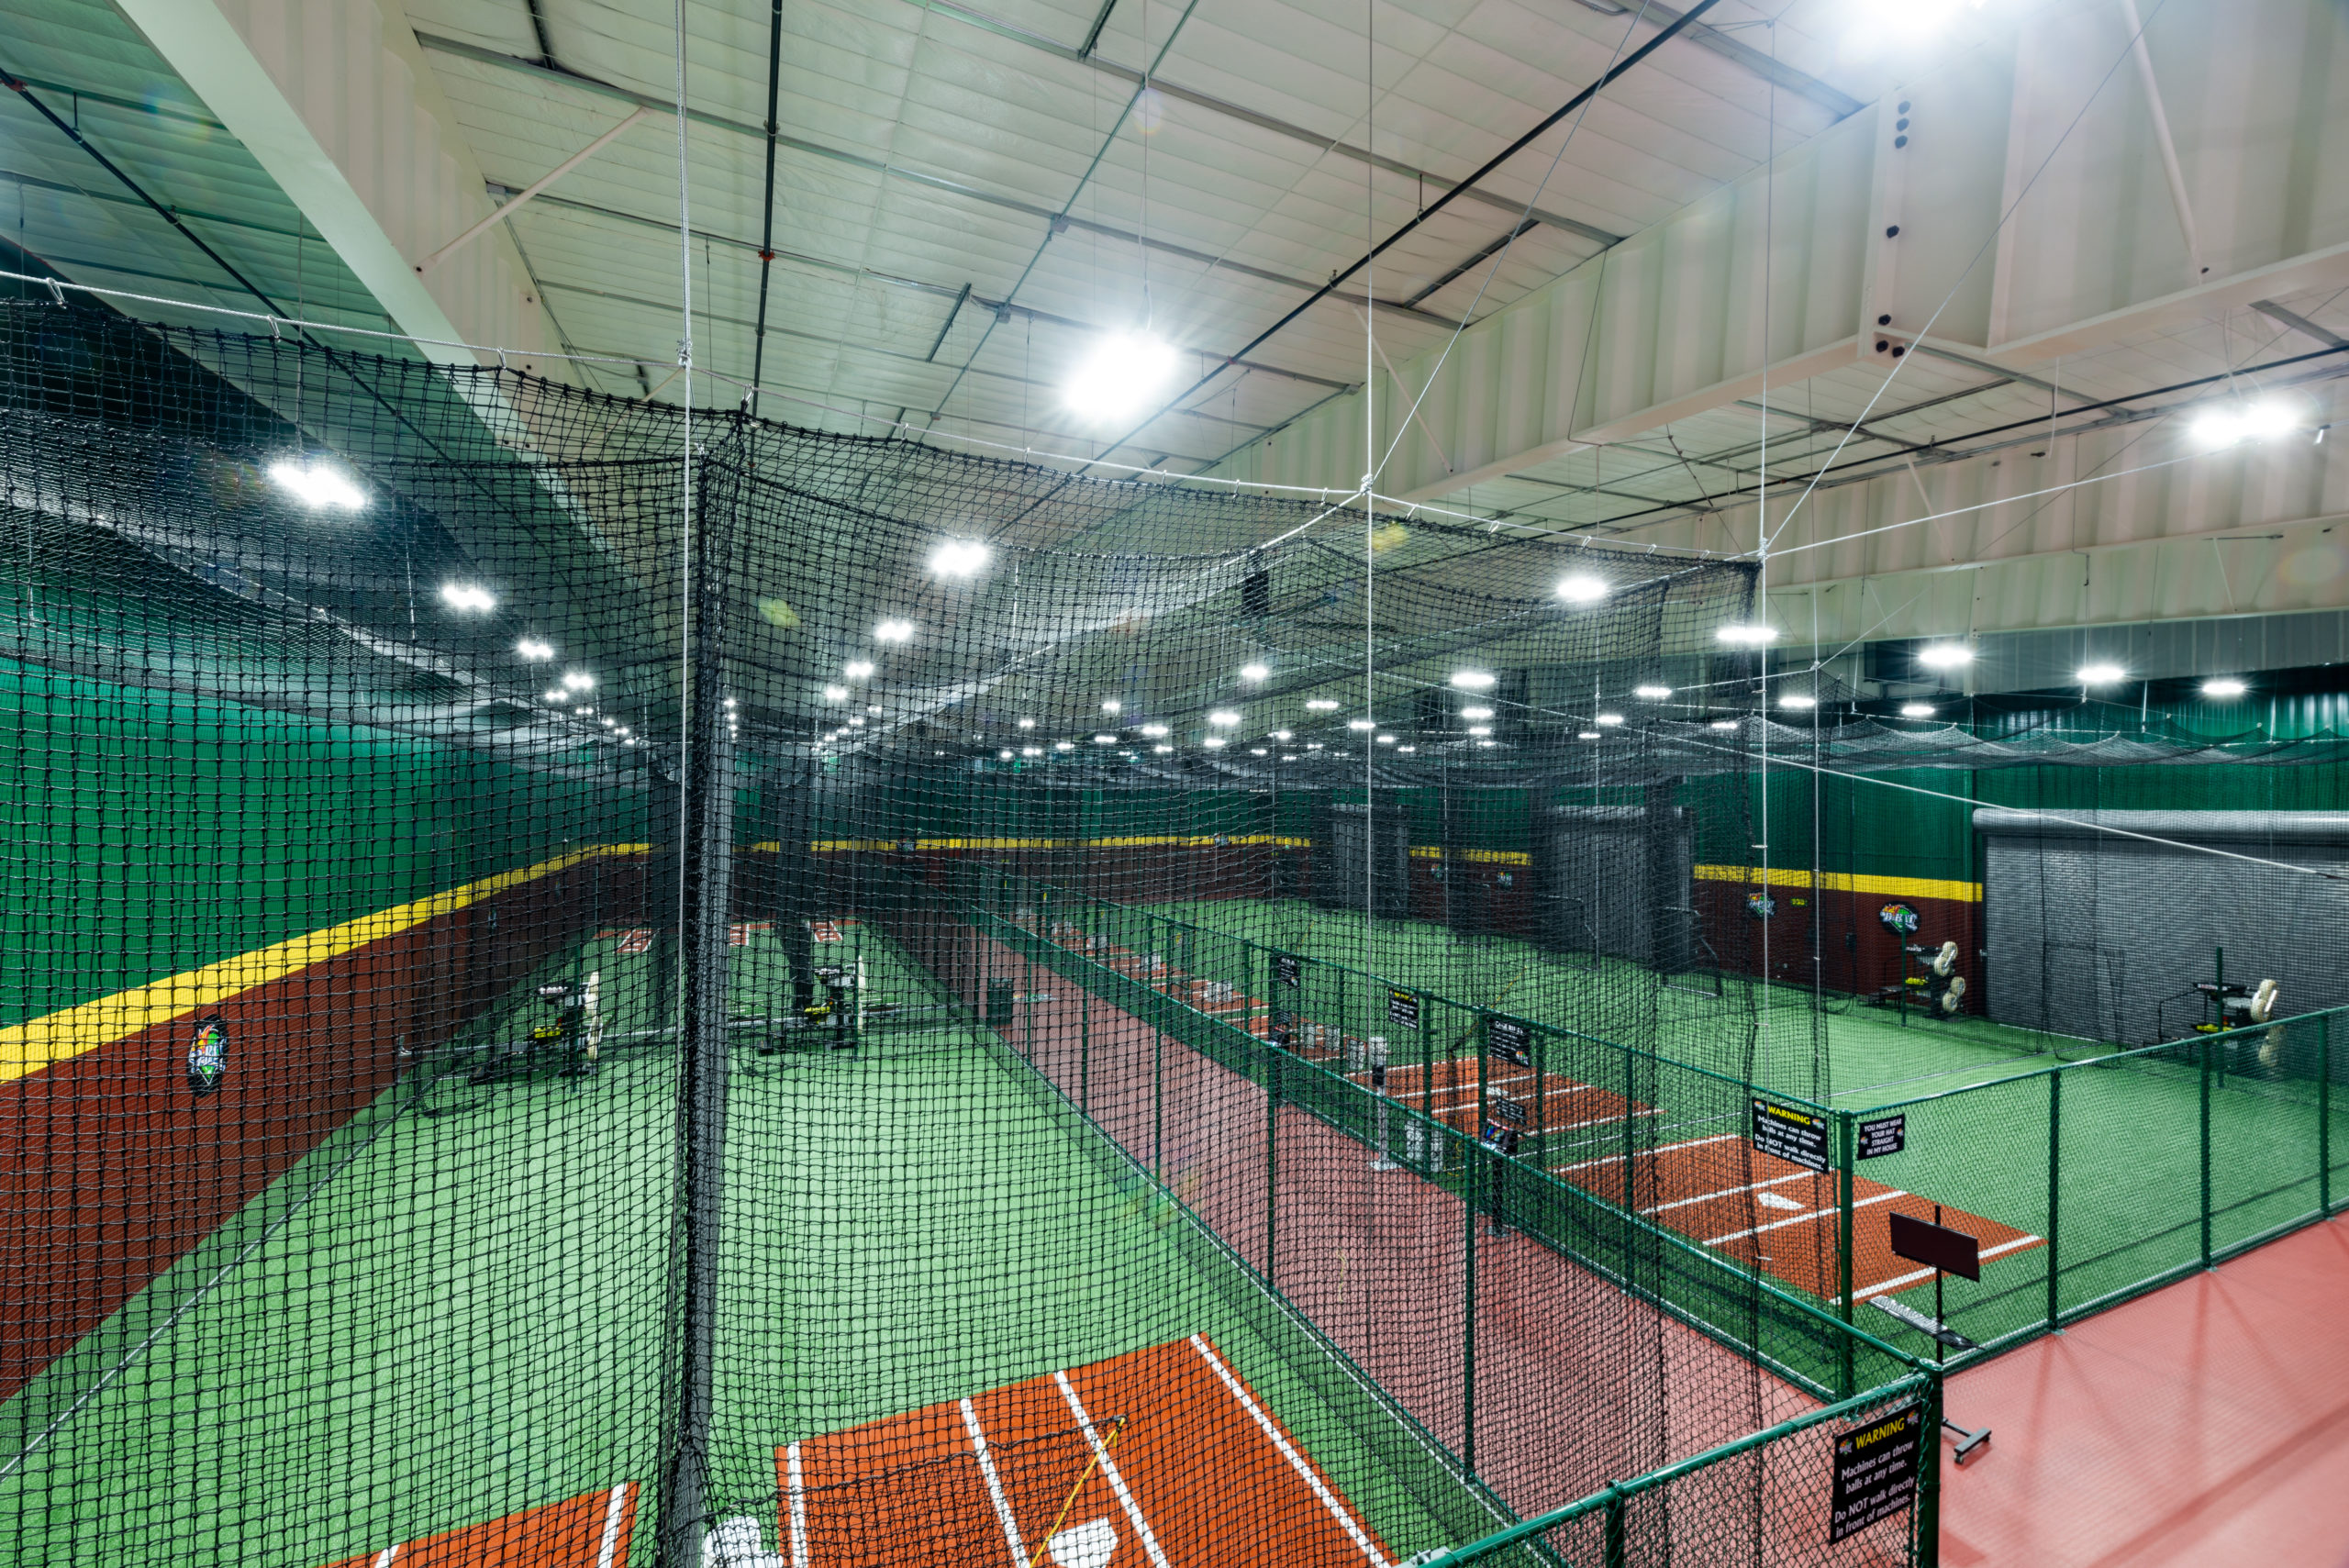 D-bat Baseball Facility in Windsor